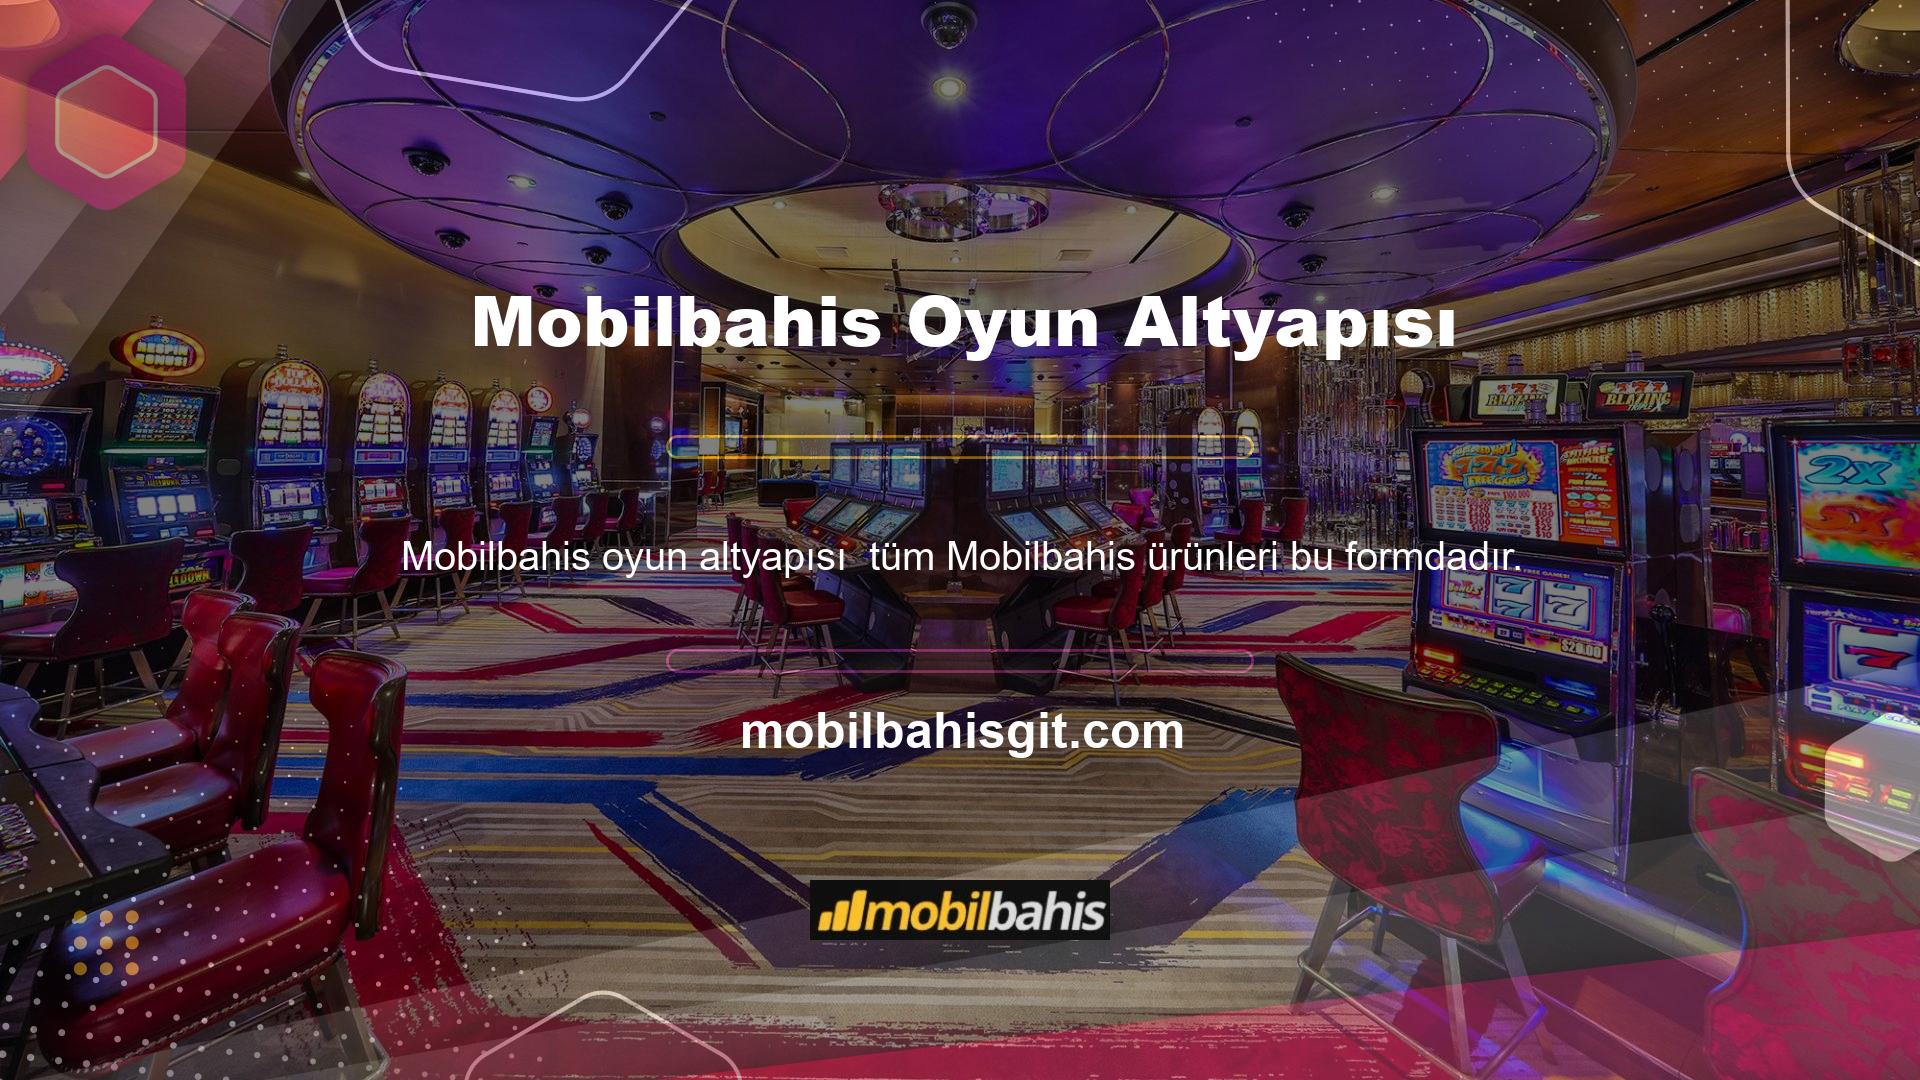 Ayrıca Mobilbahis TV hizmeti üzerinden bazı oyunları gerçek zamanlı olarak izleyebilirsiniz Mobilbahis Entry en tarafsız yasal bahis şirketidir